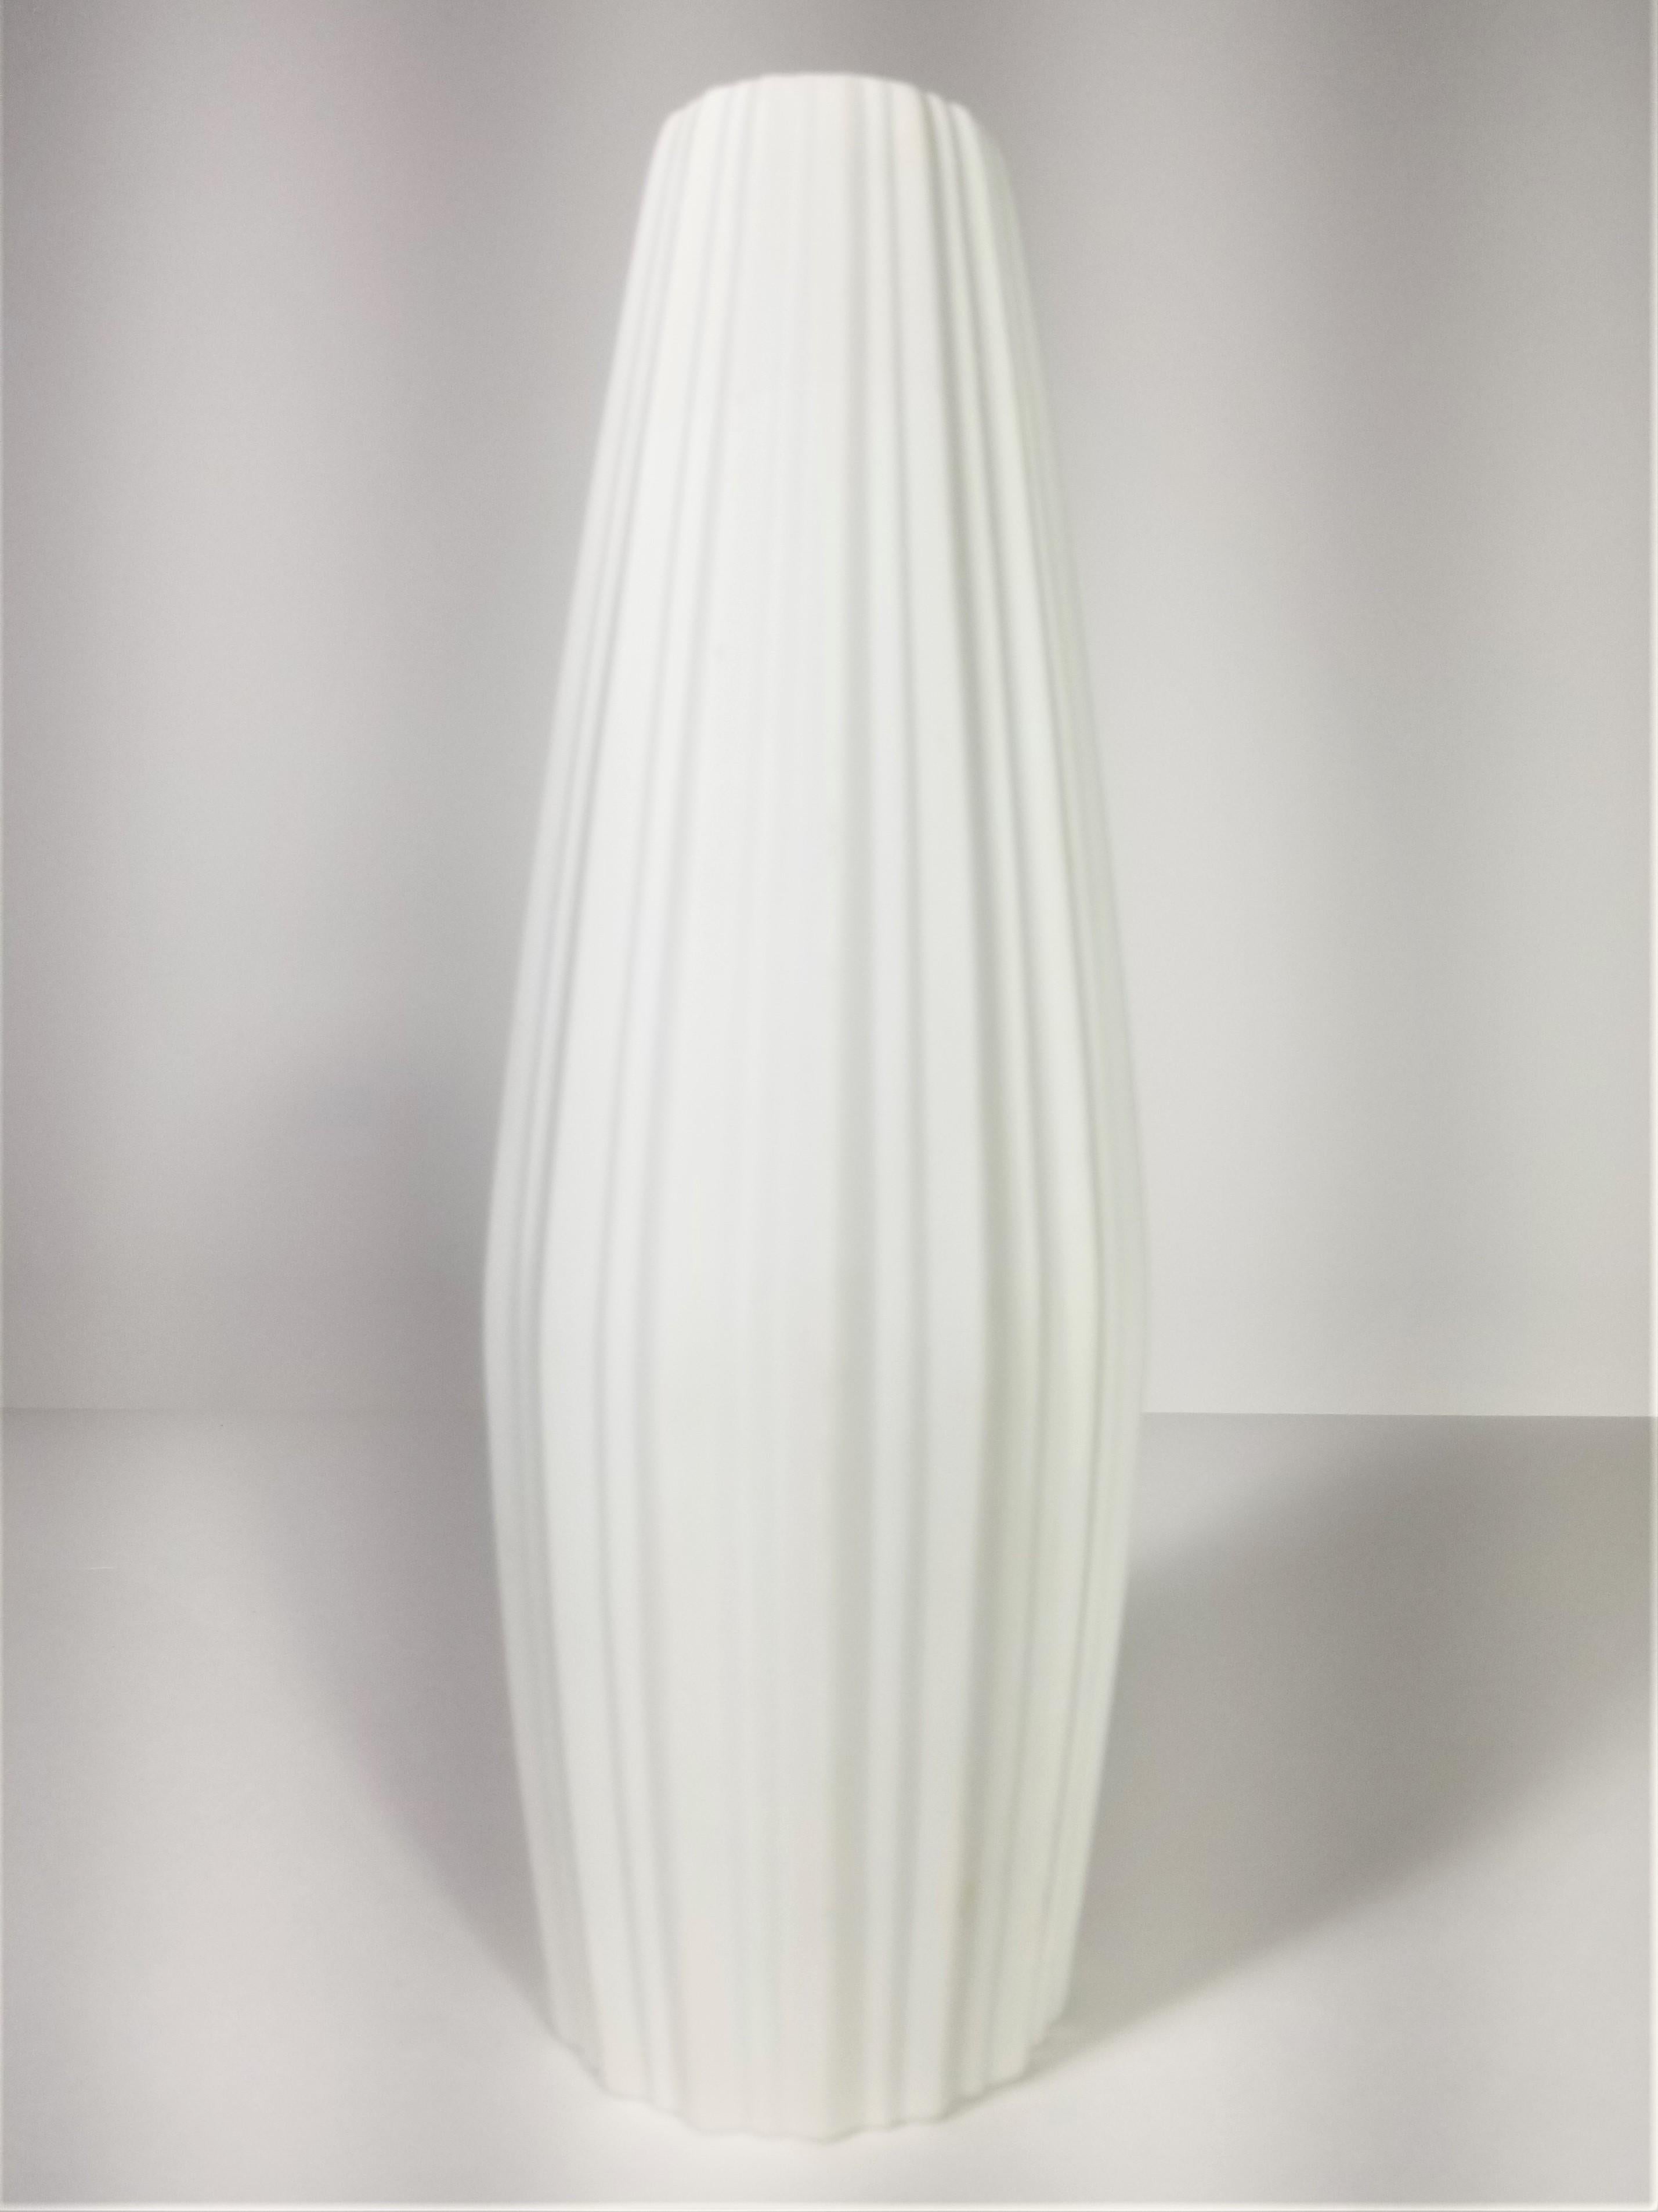 Vase White Porcelain Heinrich, H&Co Selb Bavaria, Germany  7